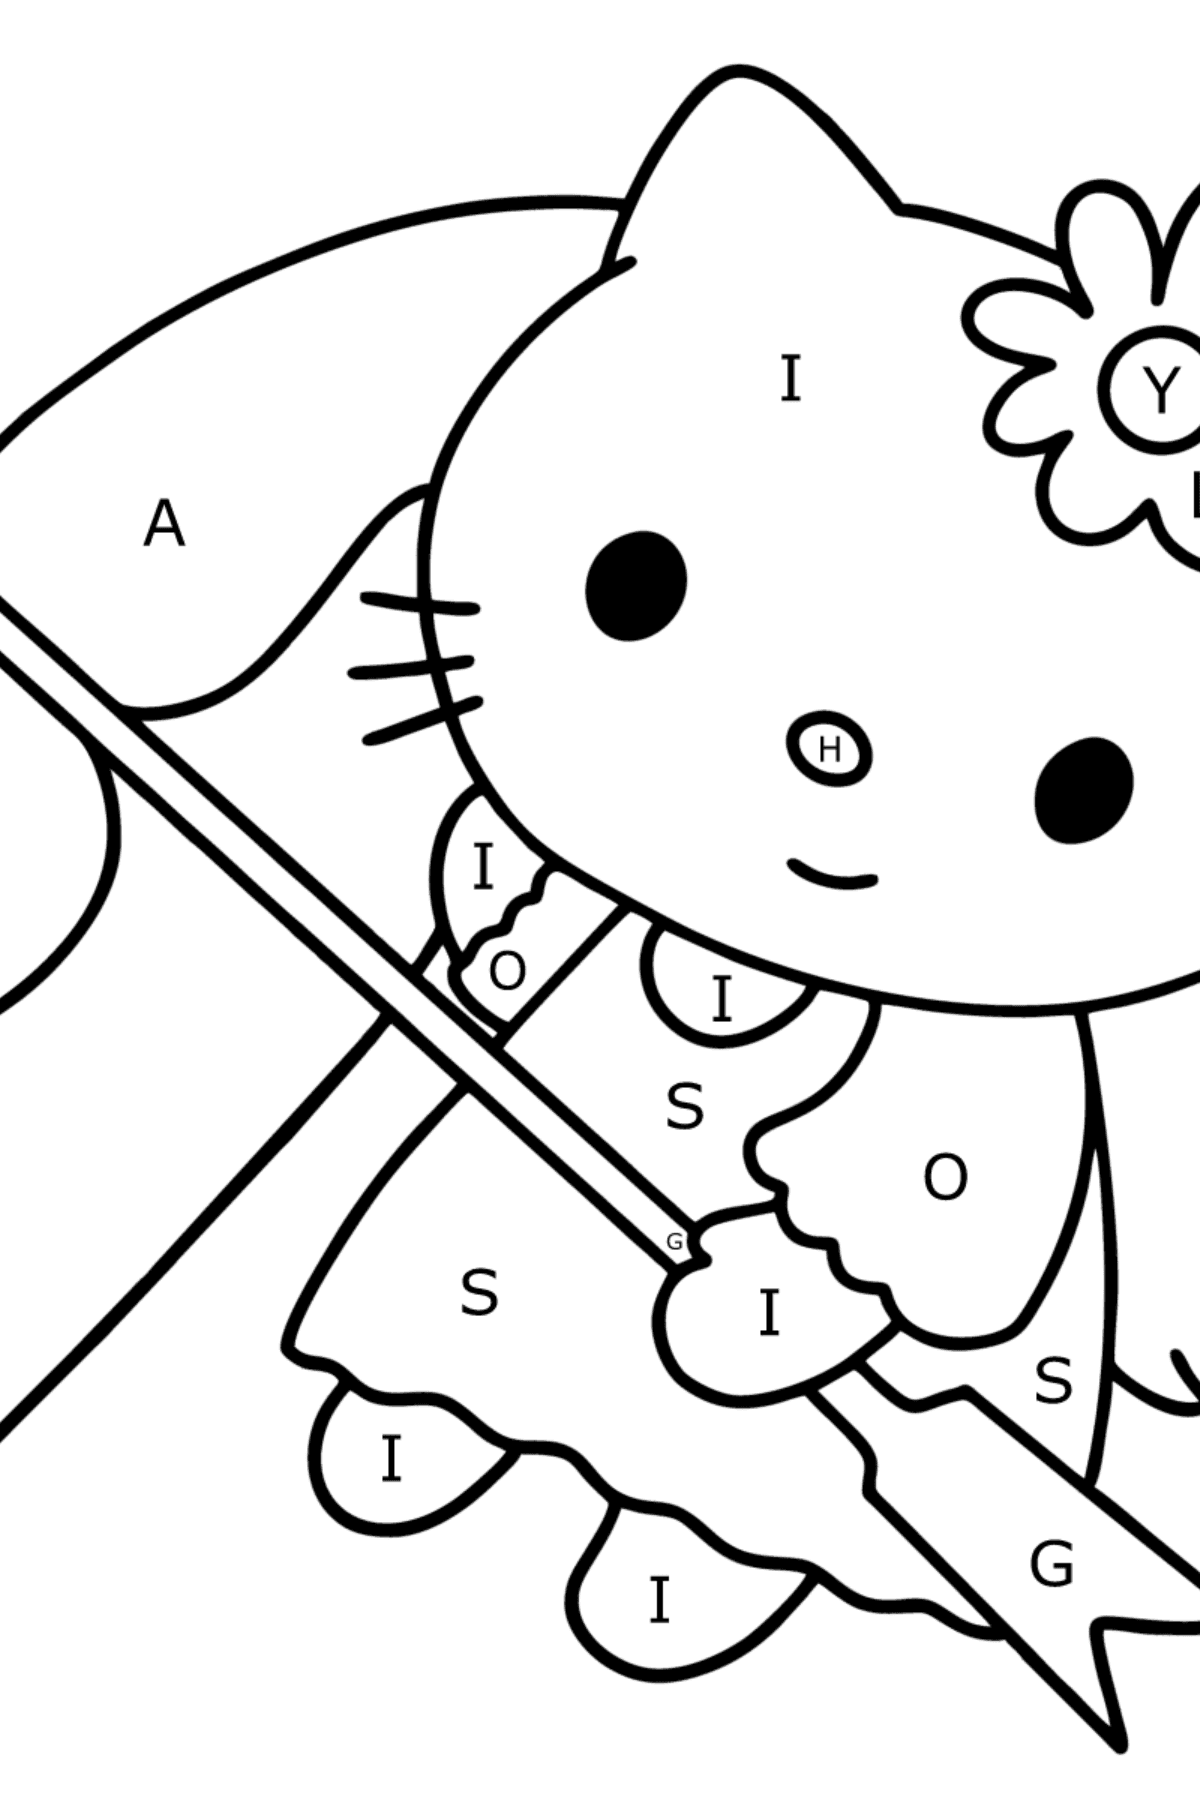 Boyama sayfası Hello Kitty Sevgililer Günü - Harflerle Boyama çocuklar için